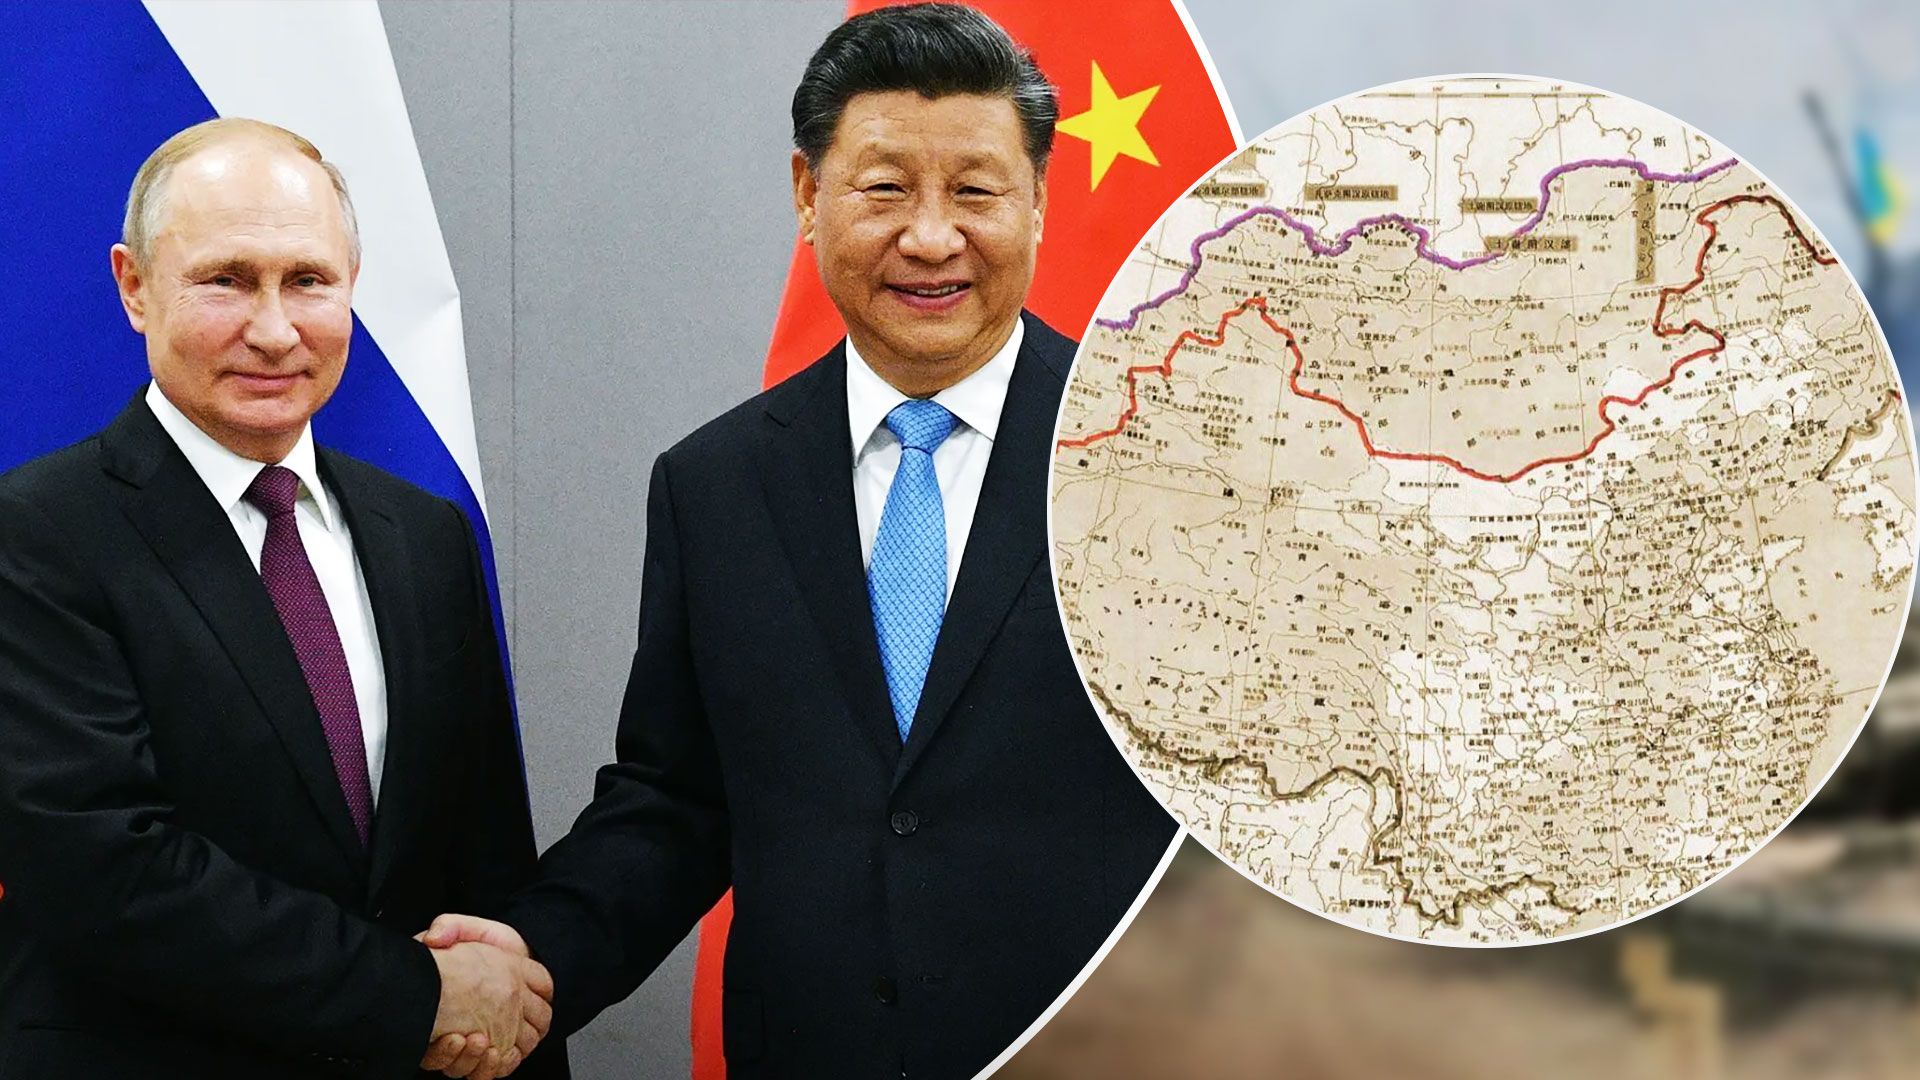 Китай представил карту с китайскими названиями российских городов - 24 Канал